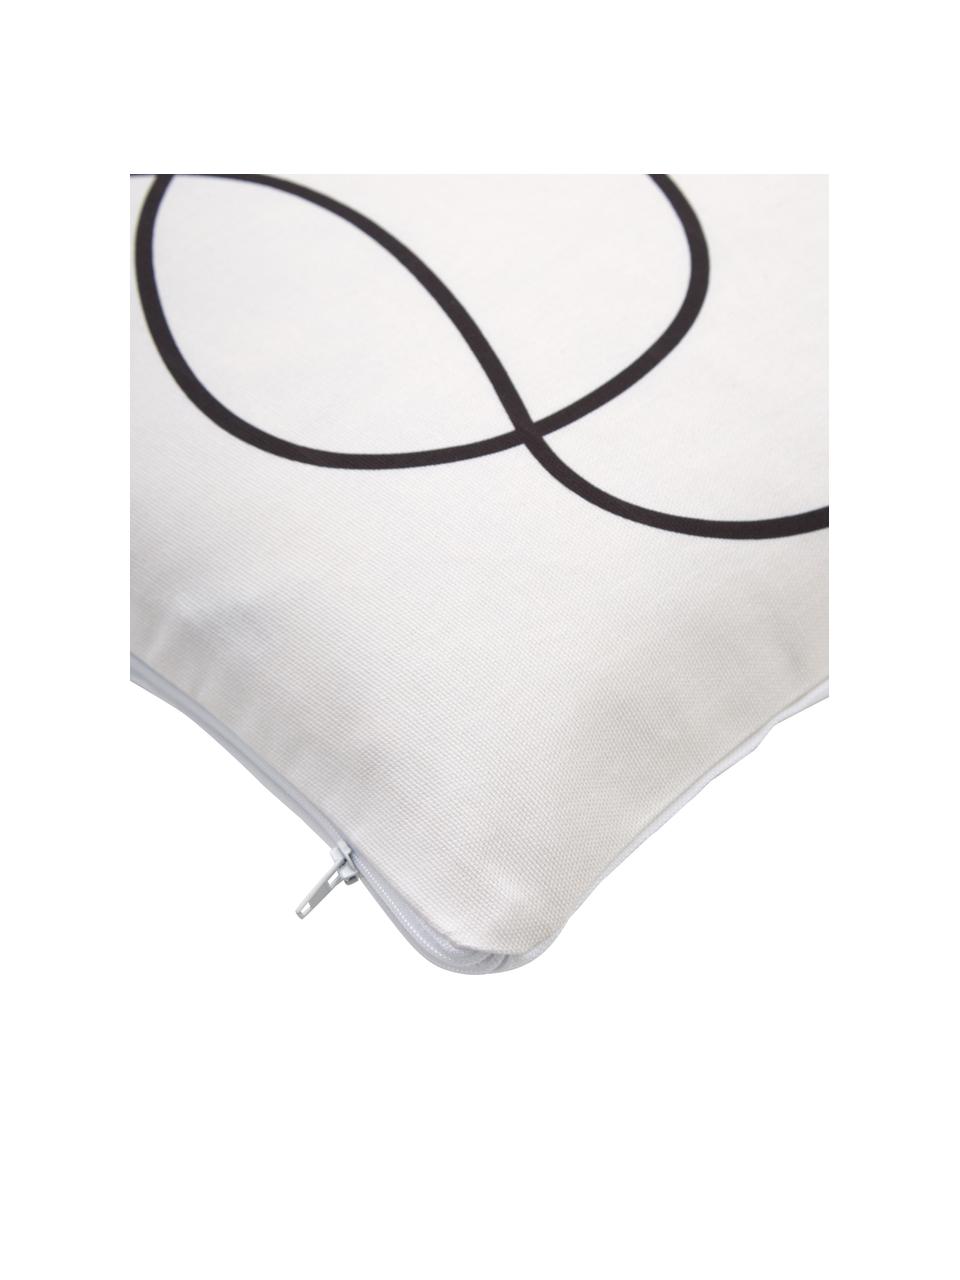 Povlak na polštář s abstraktním potiskem z organické bavlny Laleh, 100 % bavlna, s certifikátem GOTS, Bílá, černá, Š 45 cm, D 45 cm